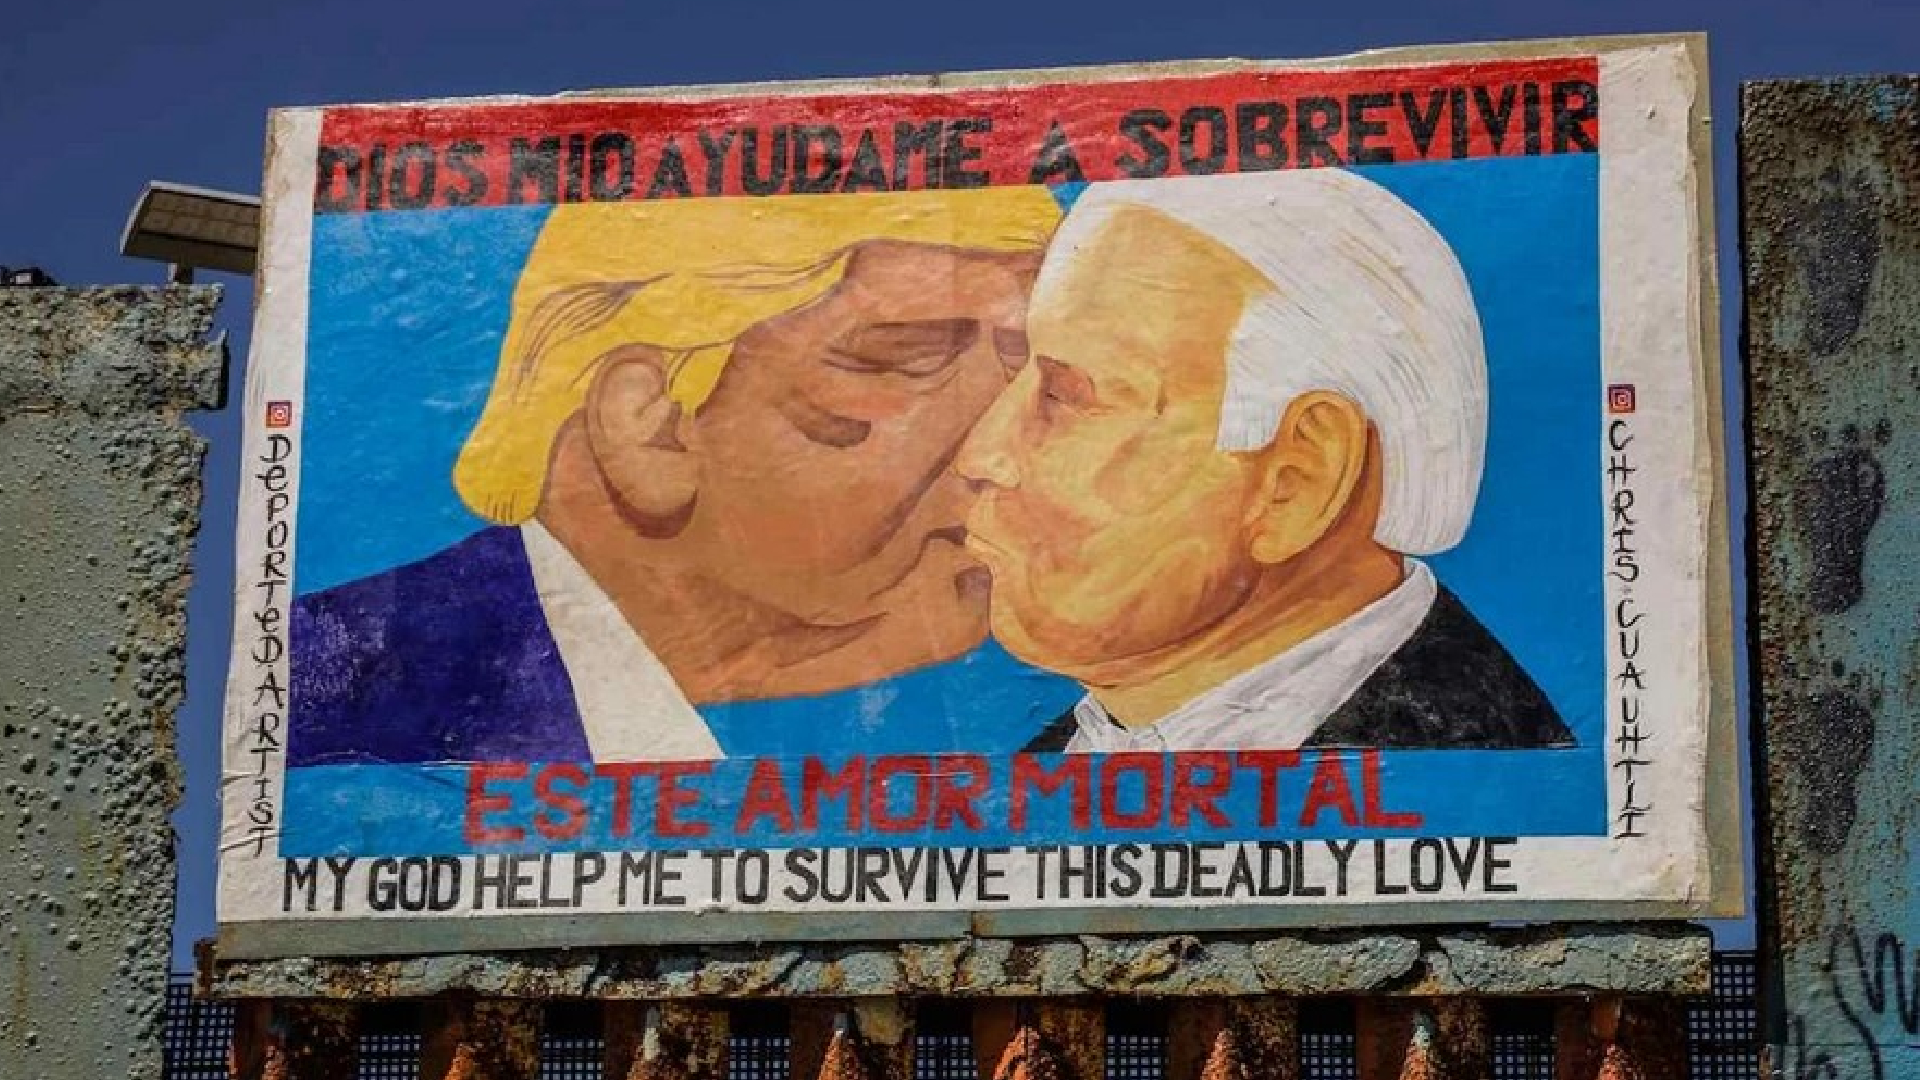 Activistas plasmaron un “beso” entre Biden y Trump y Biden sobre el muro fronterizo de Tijuana - Infobae